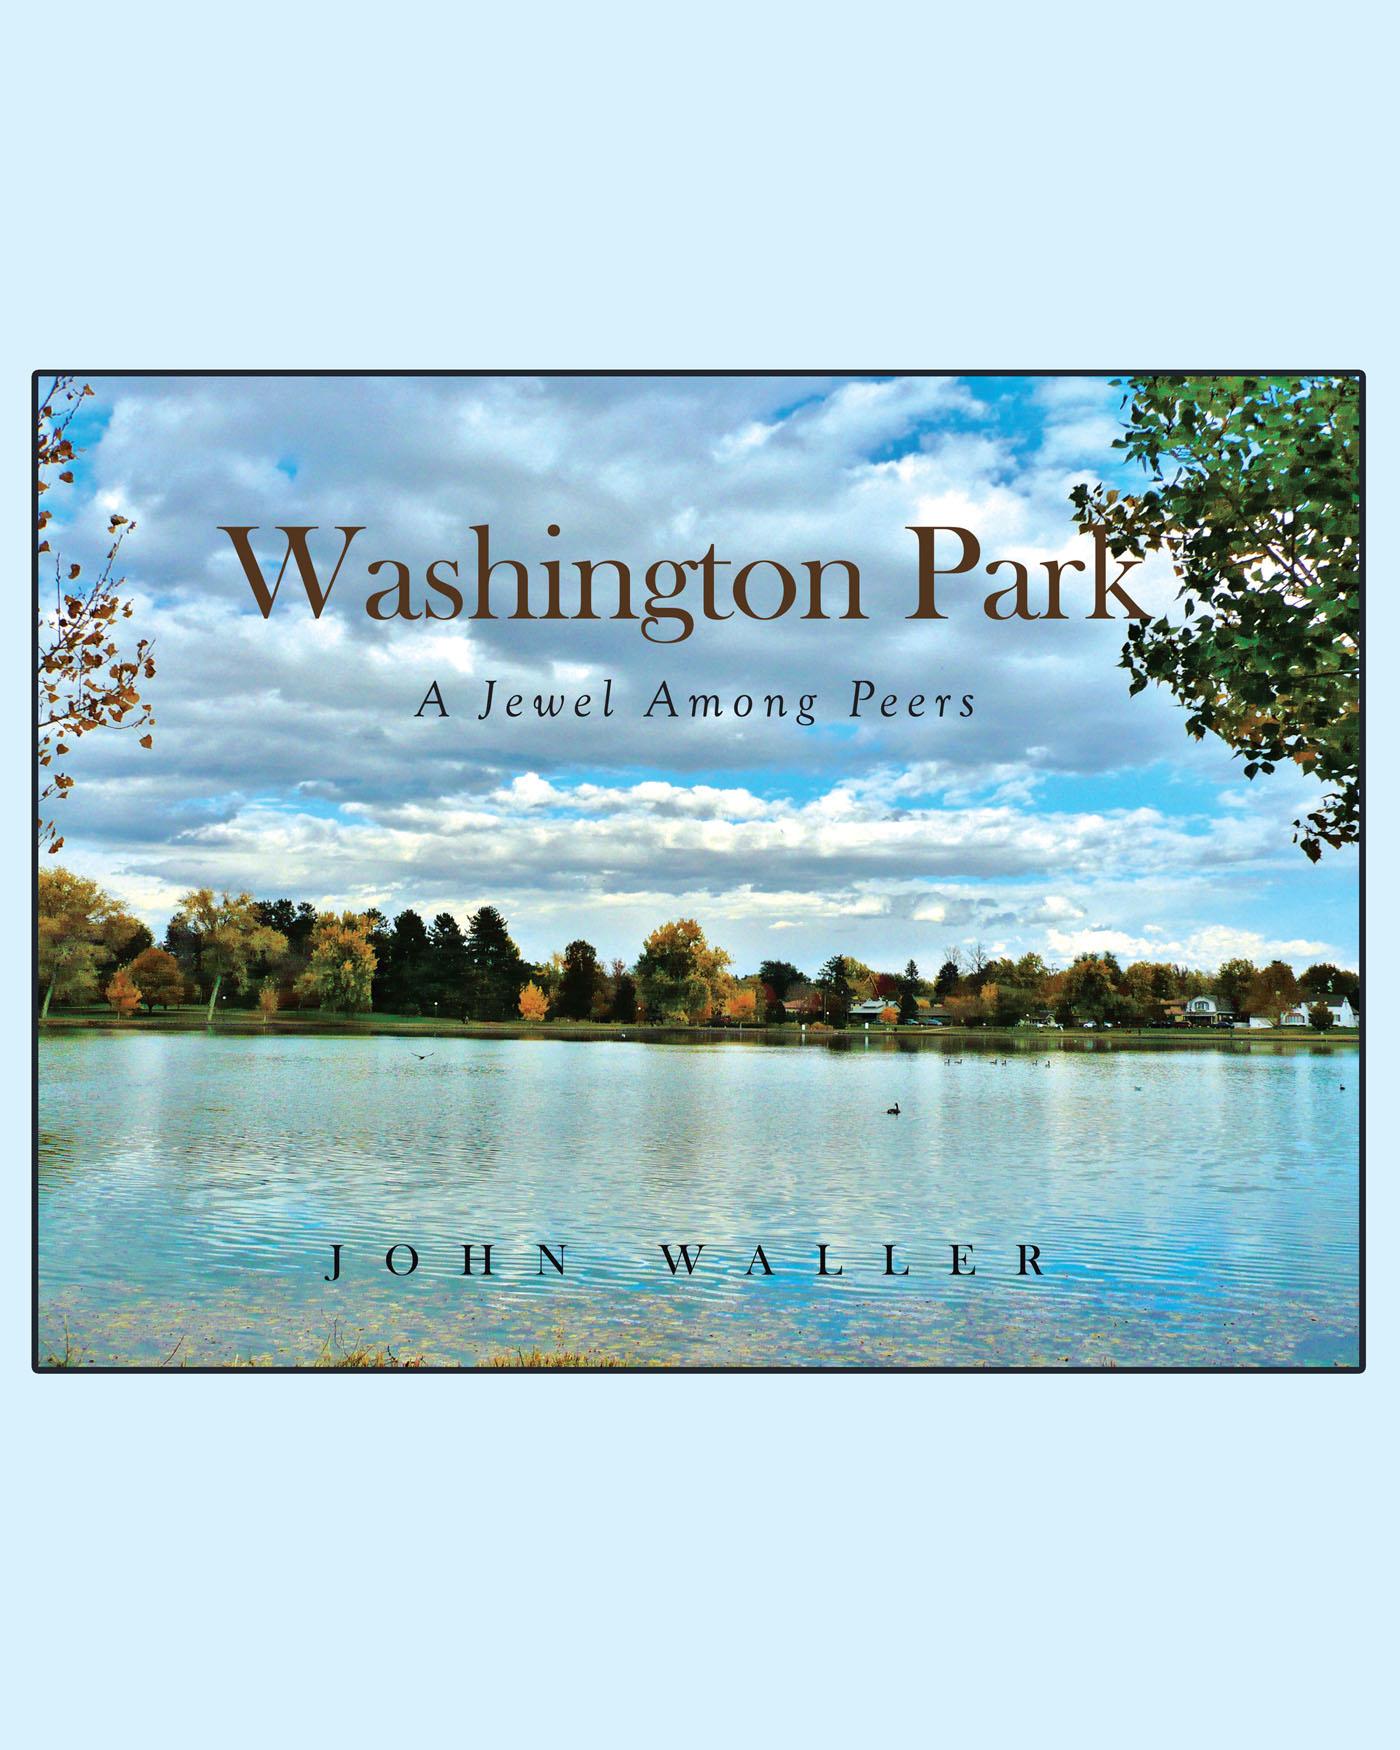 Washington Park Cover Image